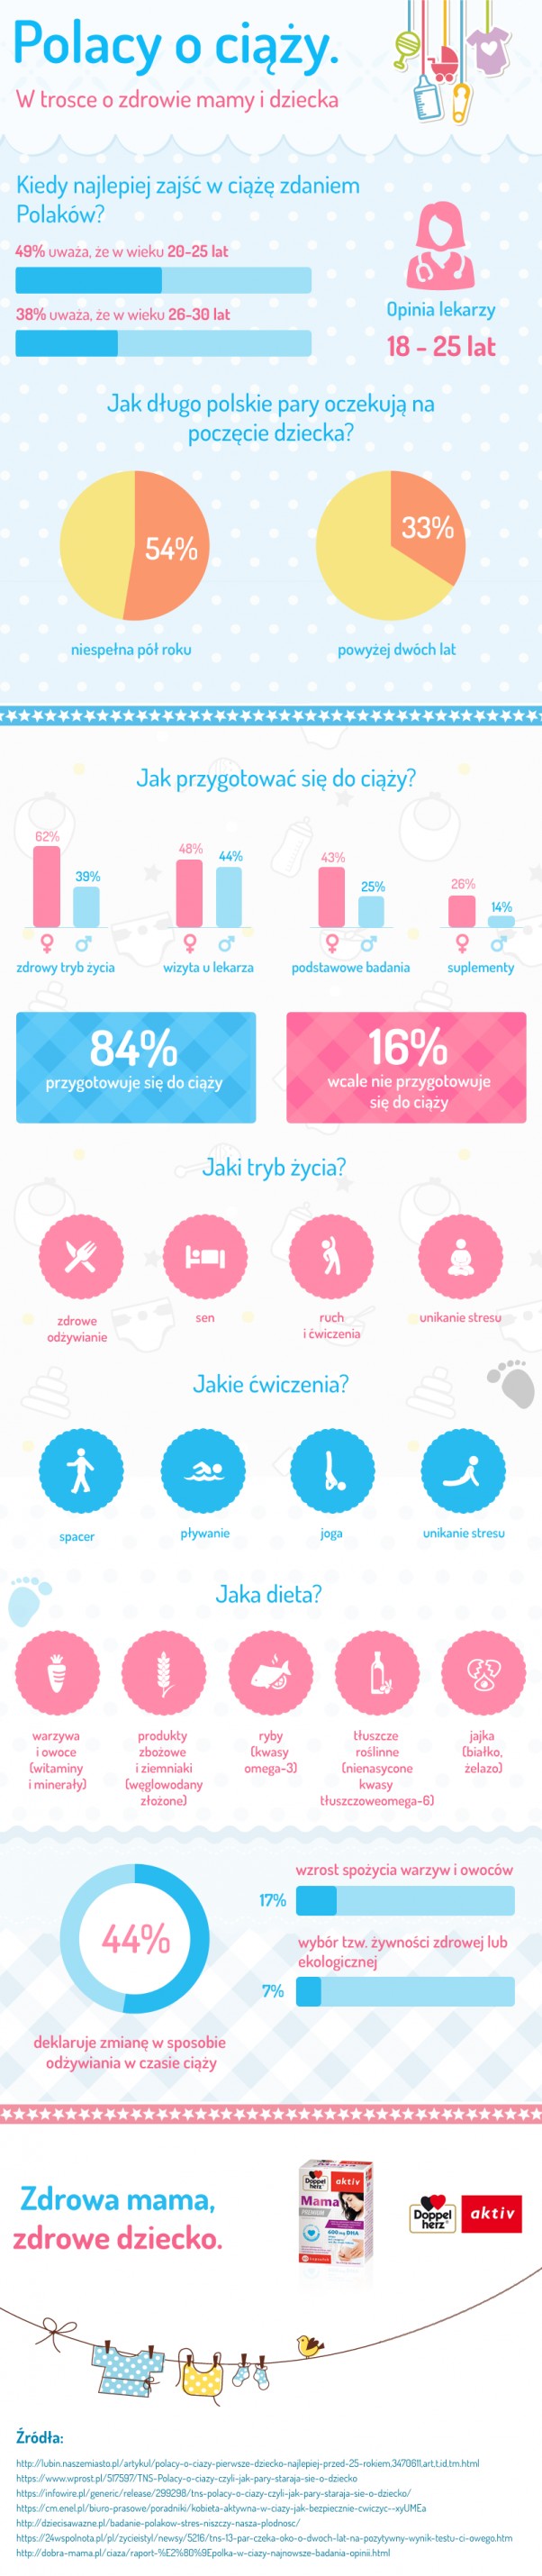 Infografika "Polacy o ciąży"      